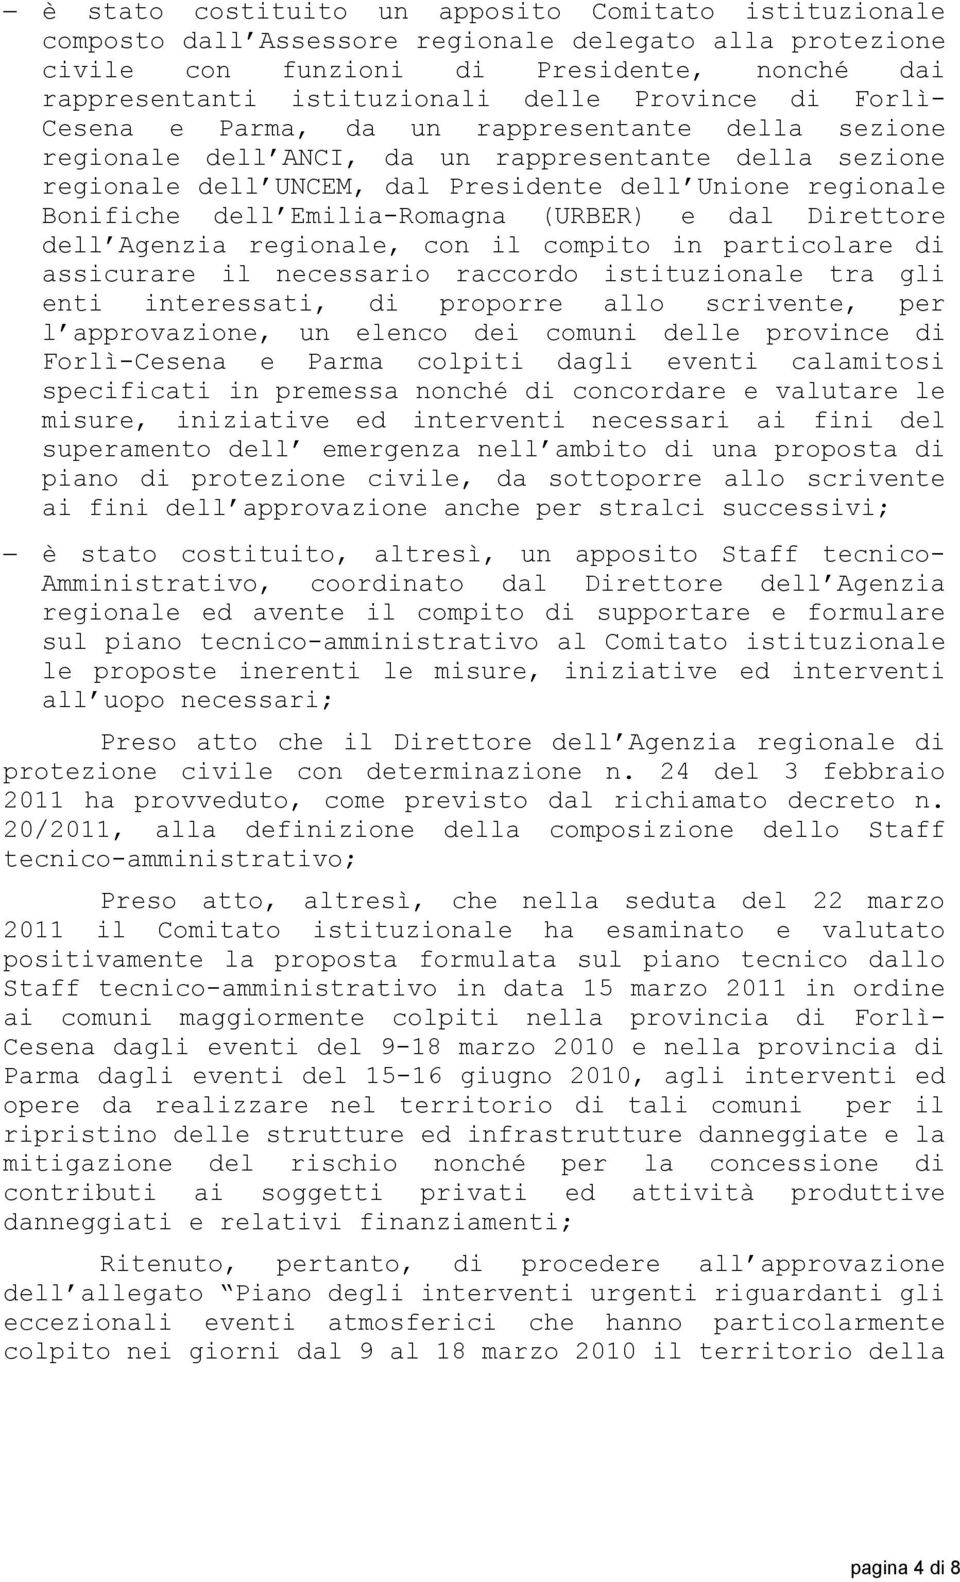 Emilia-Romagna (URBER) e dal Direttore dell Agenzia regionale, con il compito in particolare di assicurare il necessario raccordo istituzionale tra gli enti interessati, di proporre allo scrivente,